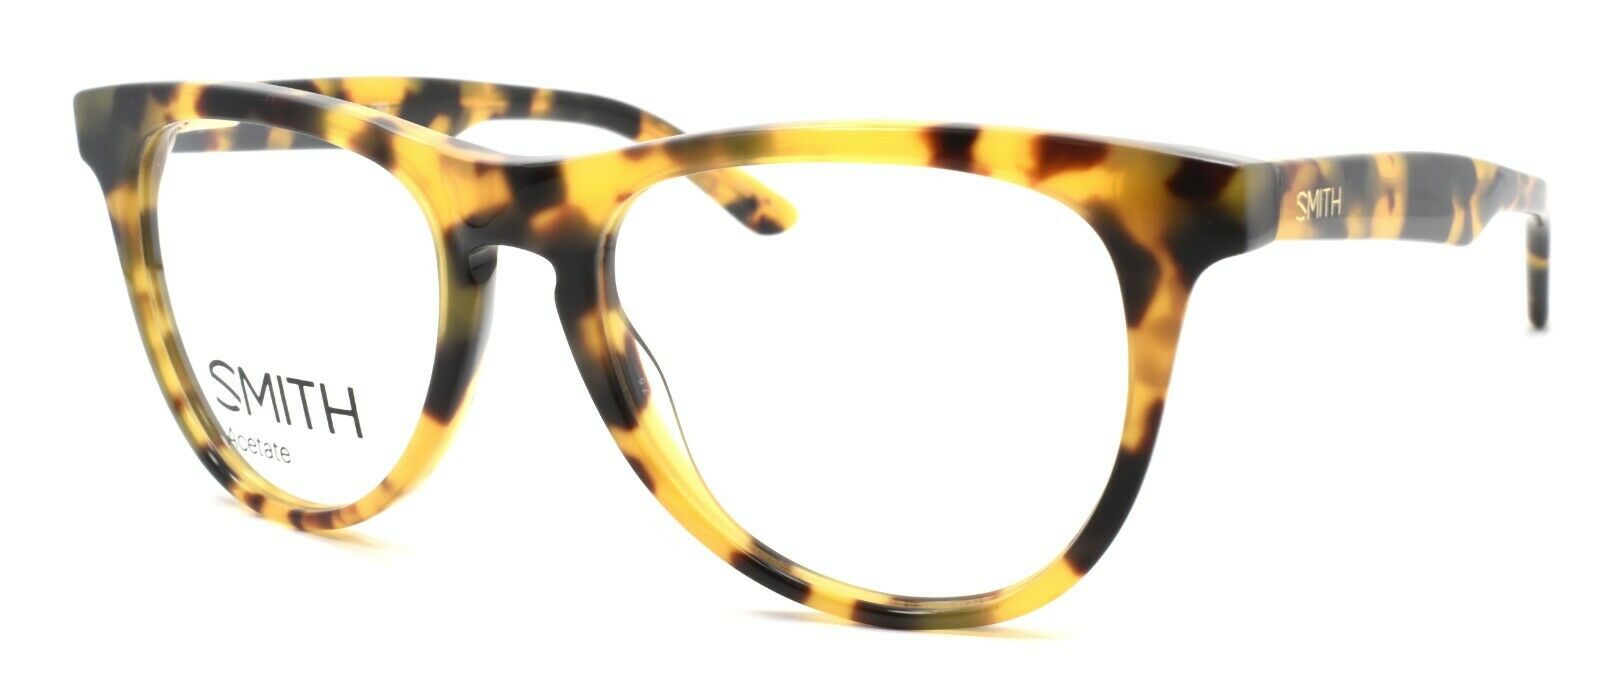 1-SMITH Optics Lynden 0B9 Women's Eyeglasses Frames 49-17-135 Tortoise + CASE-762753230928-IKSpecs